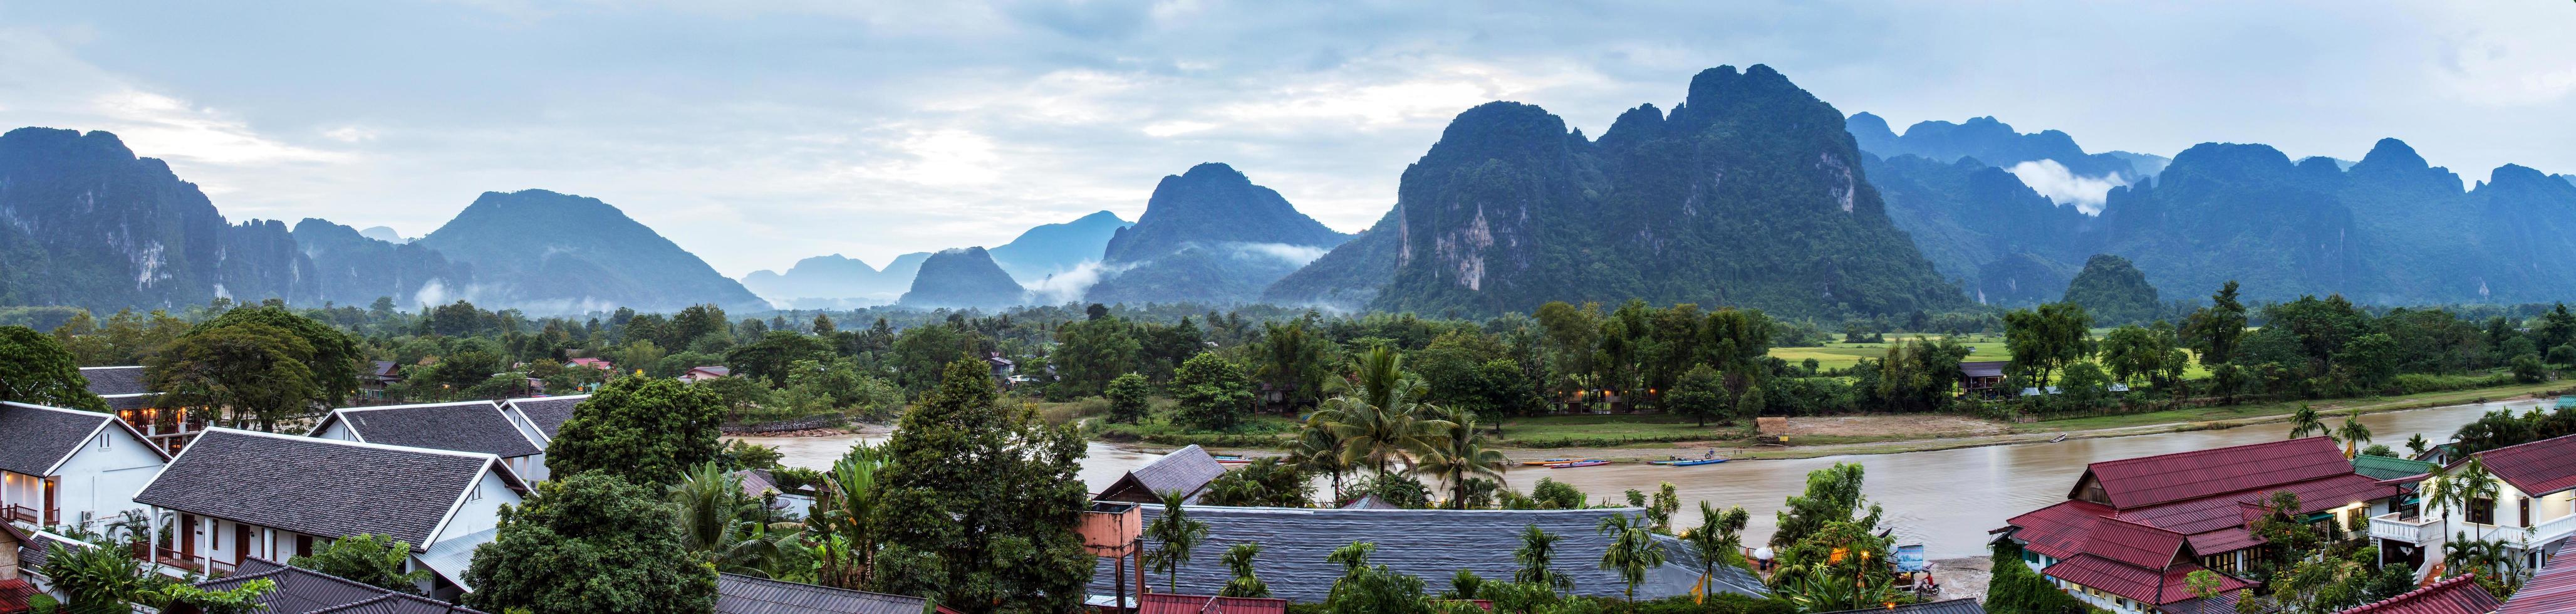 visie voor panorama in vang vieng, Laos. foto